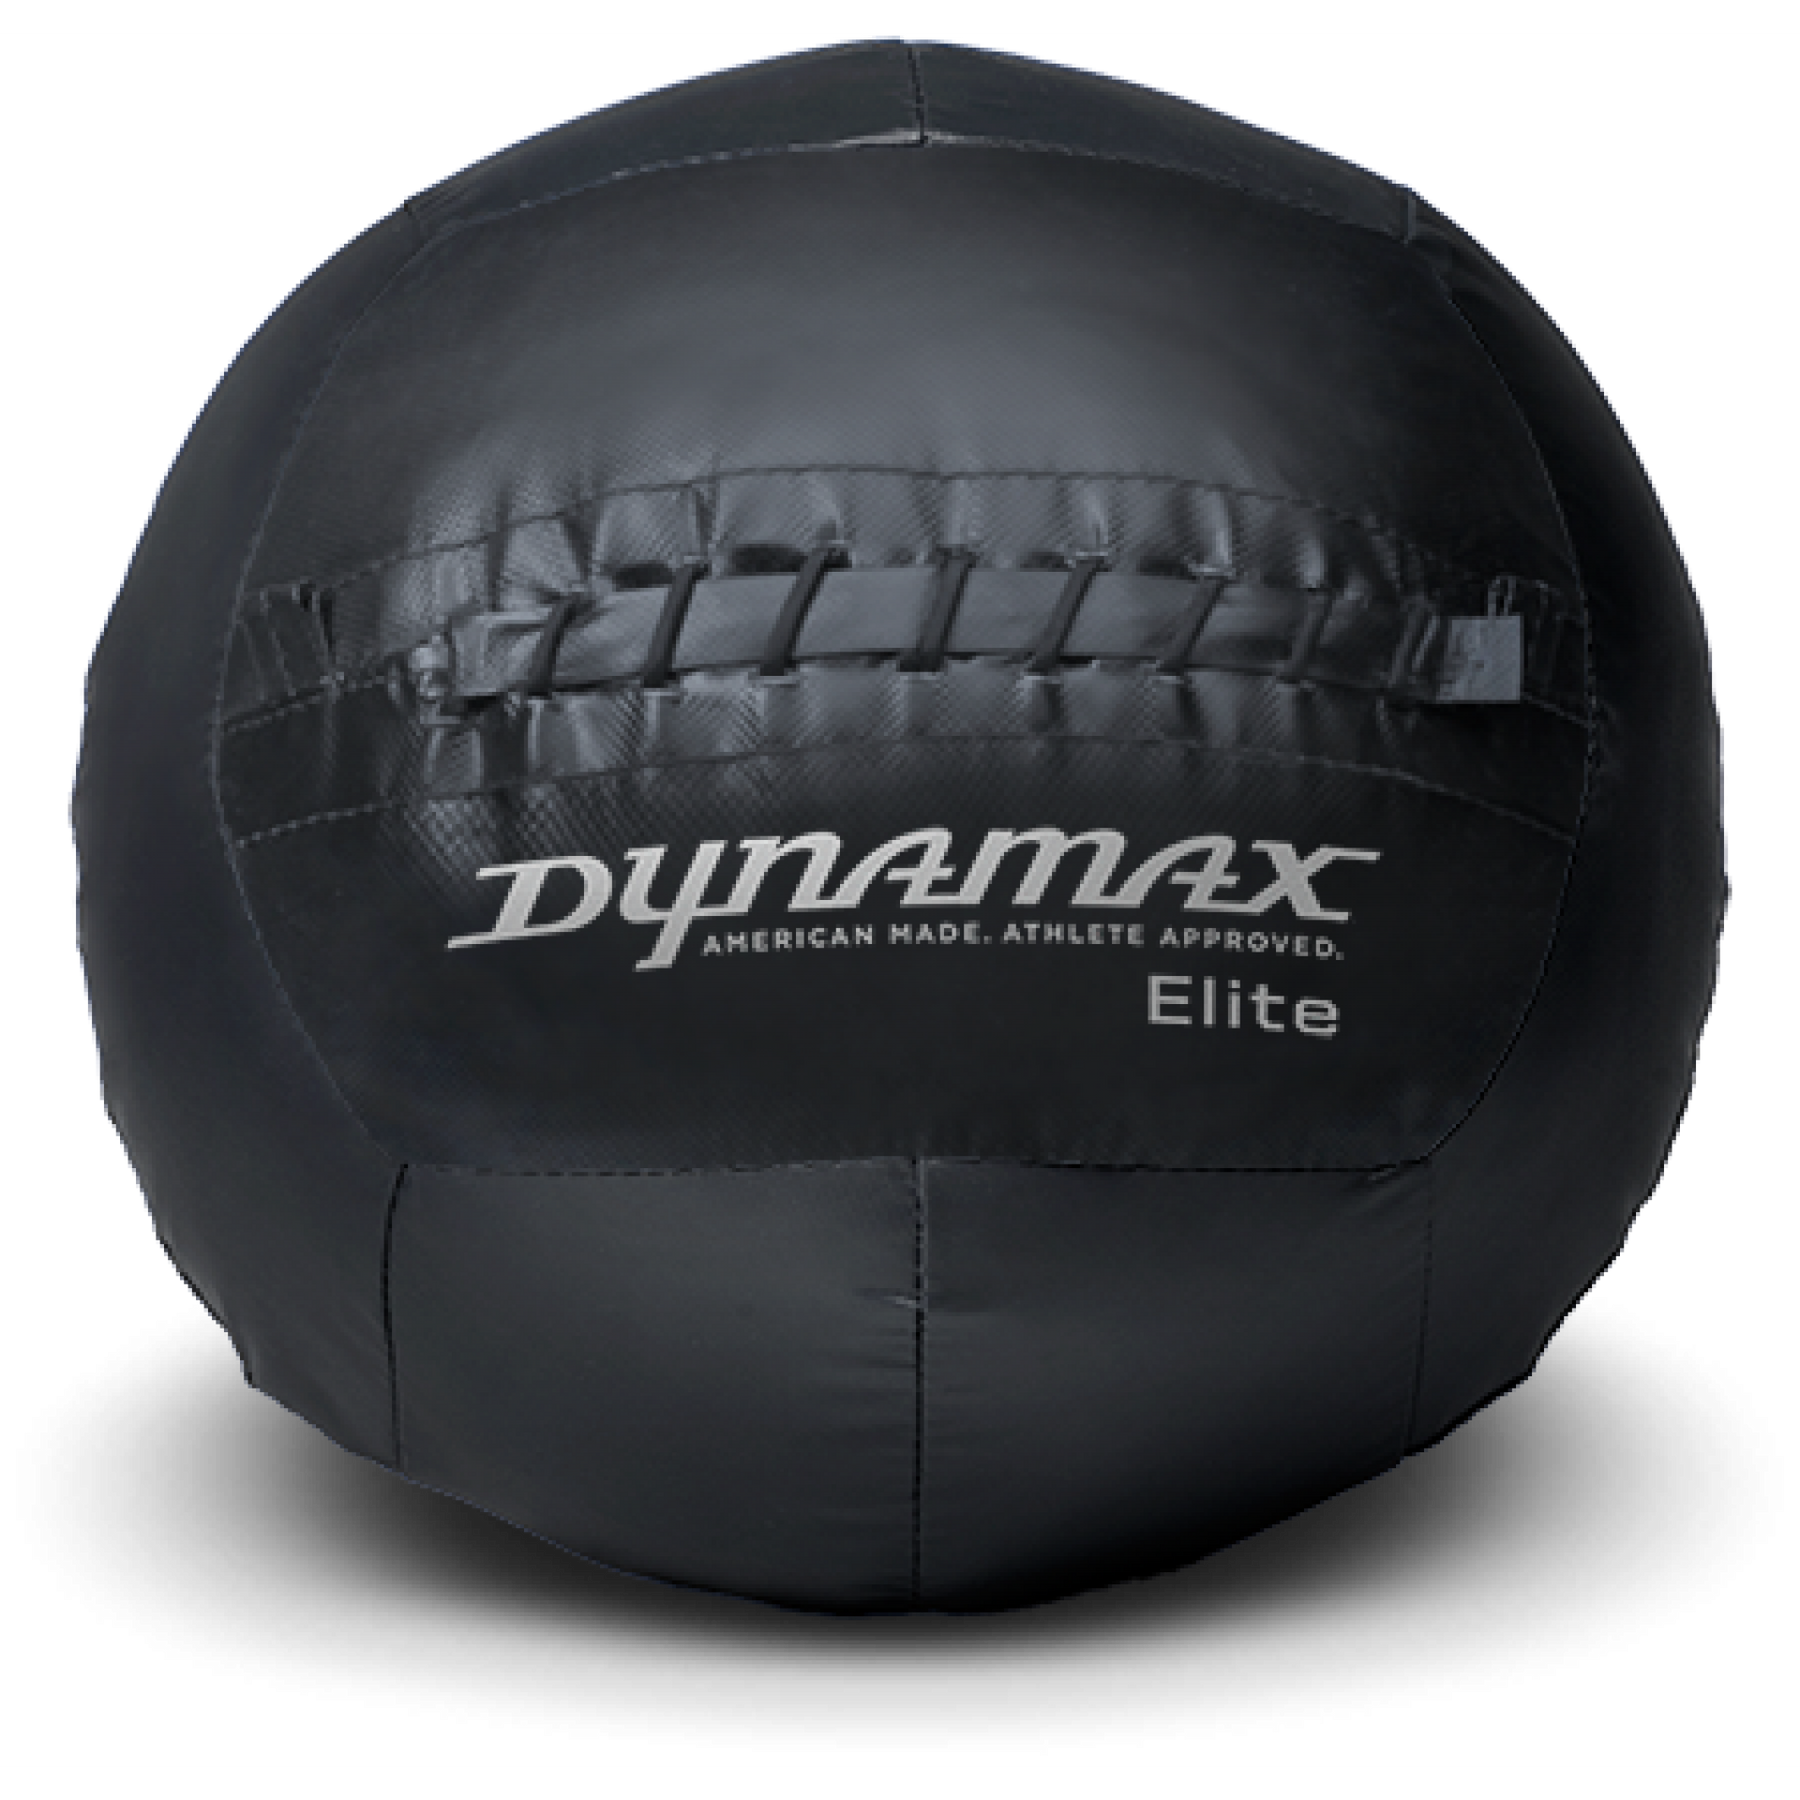 Soft Medicine Ball - Dynamax Elite